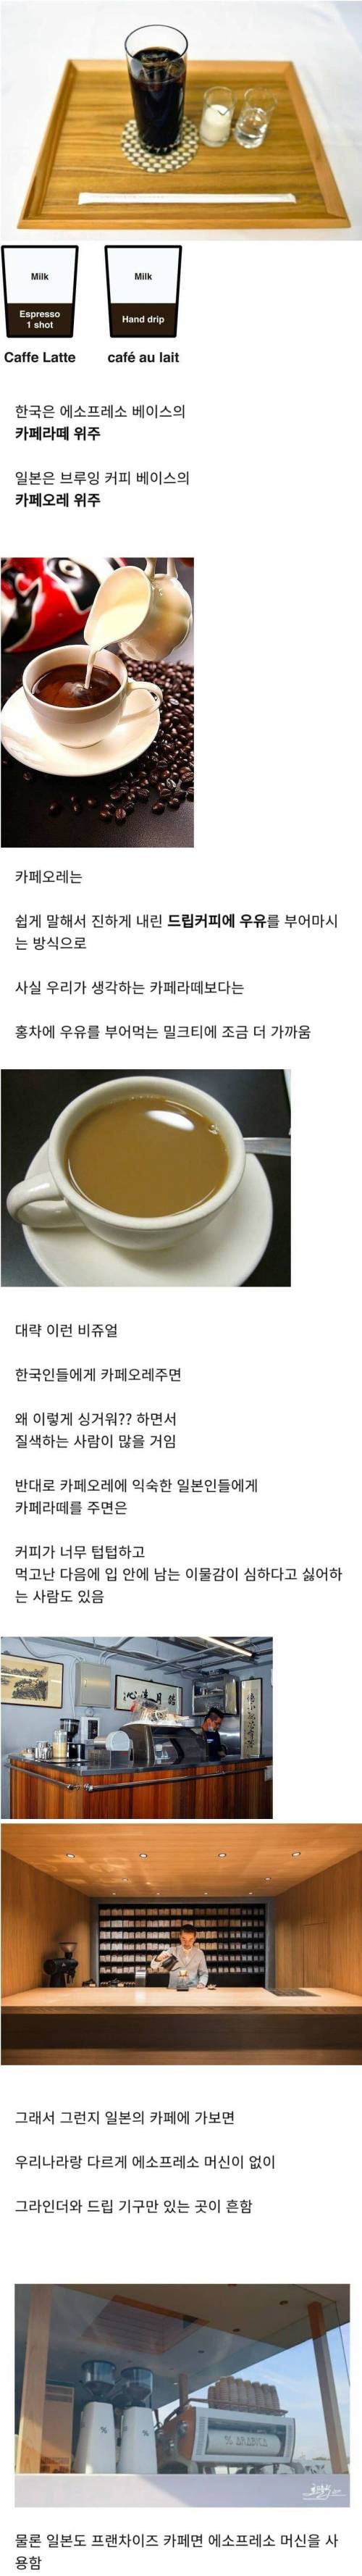 10 한국과 일본 커피의 차이.jpg